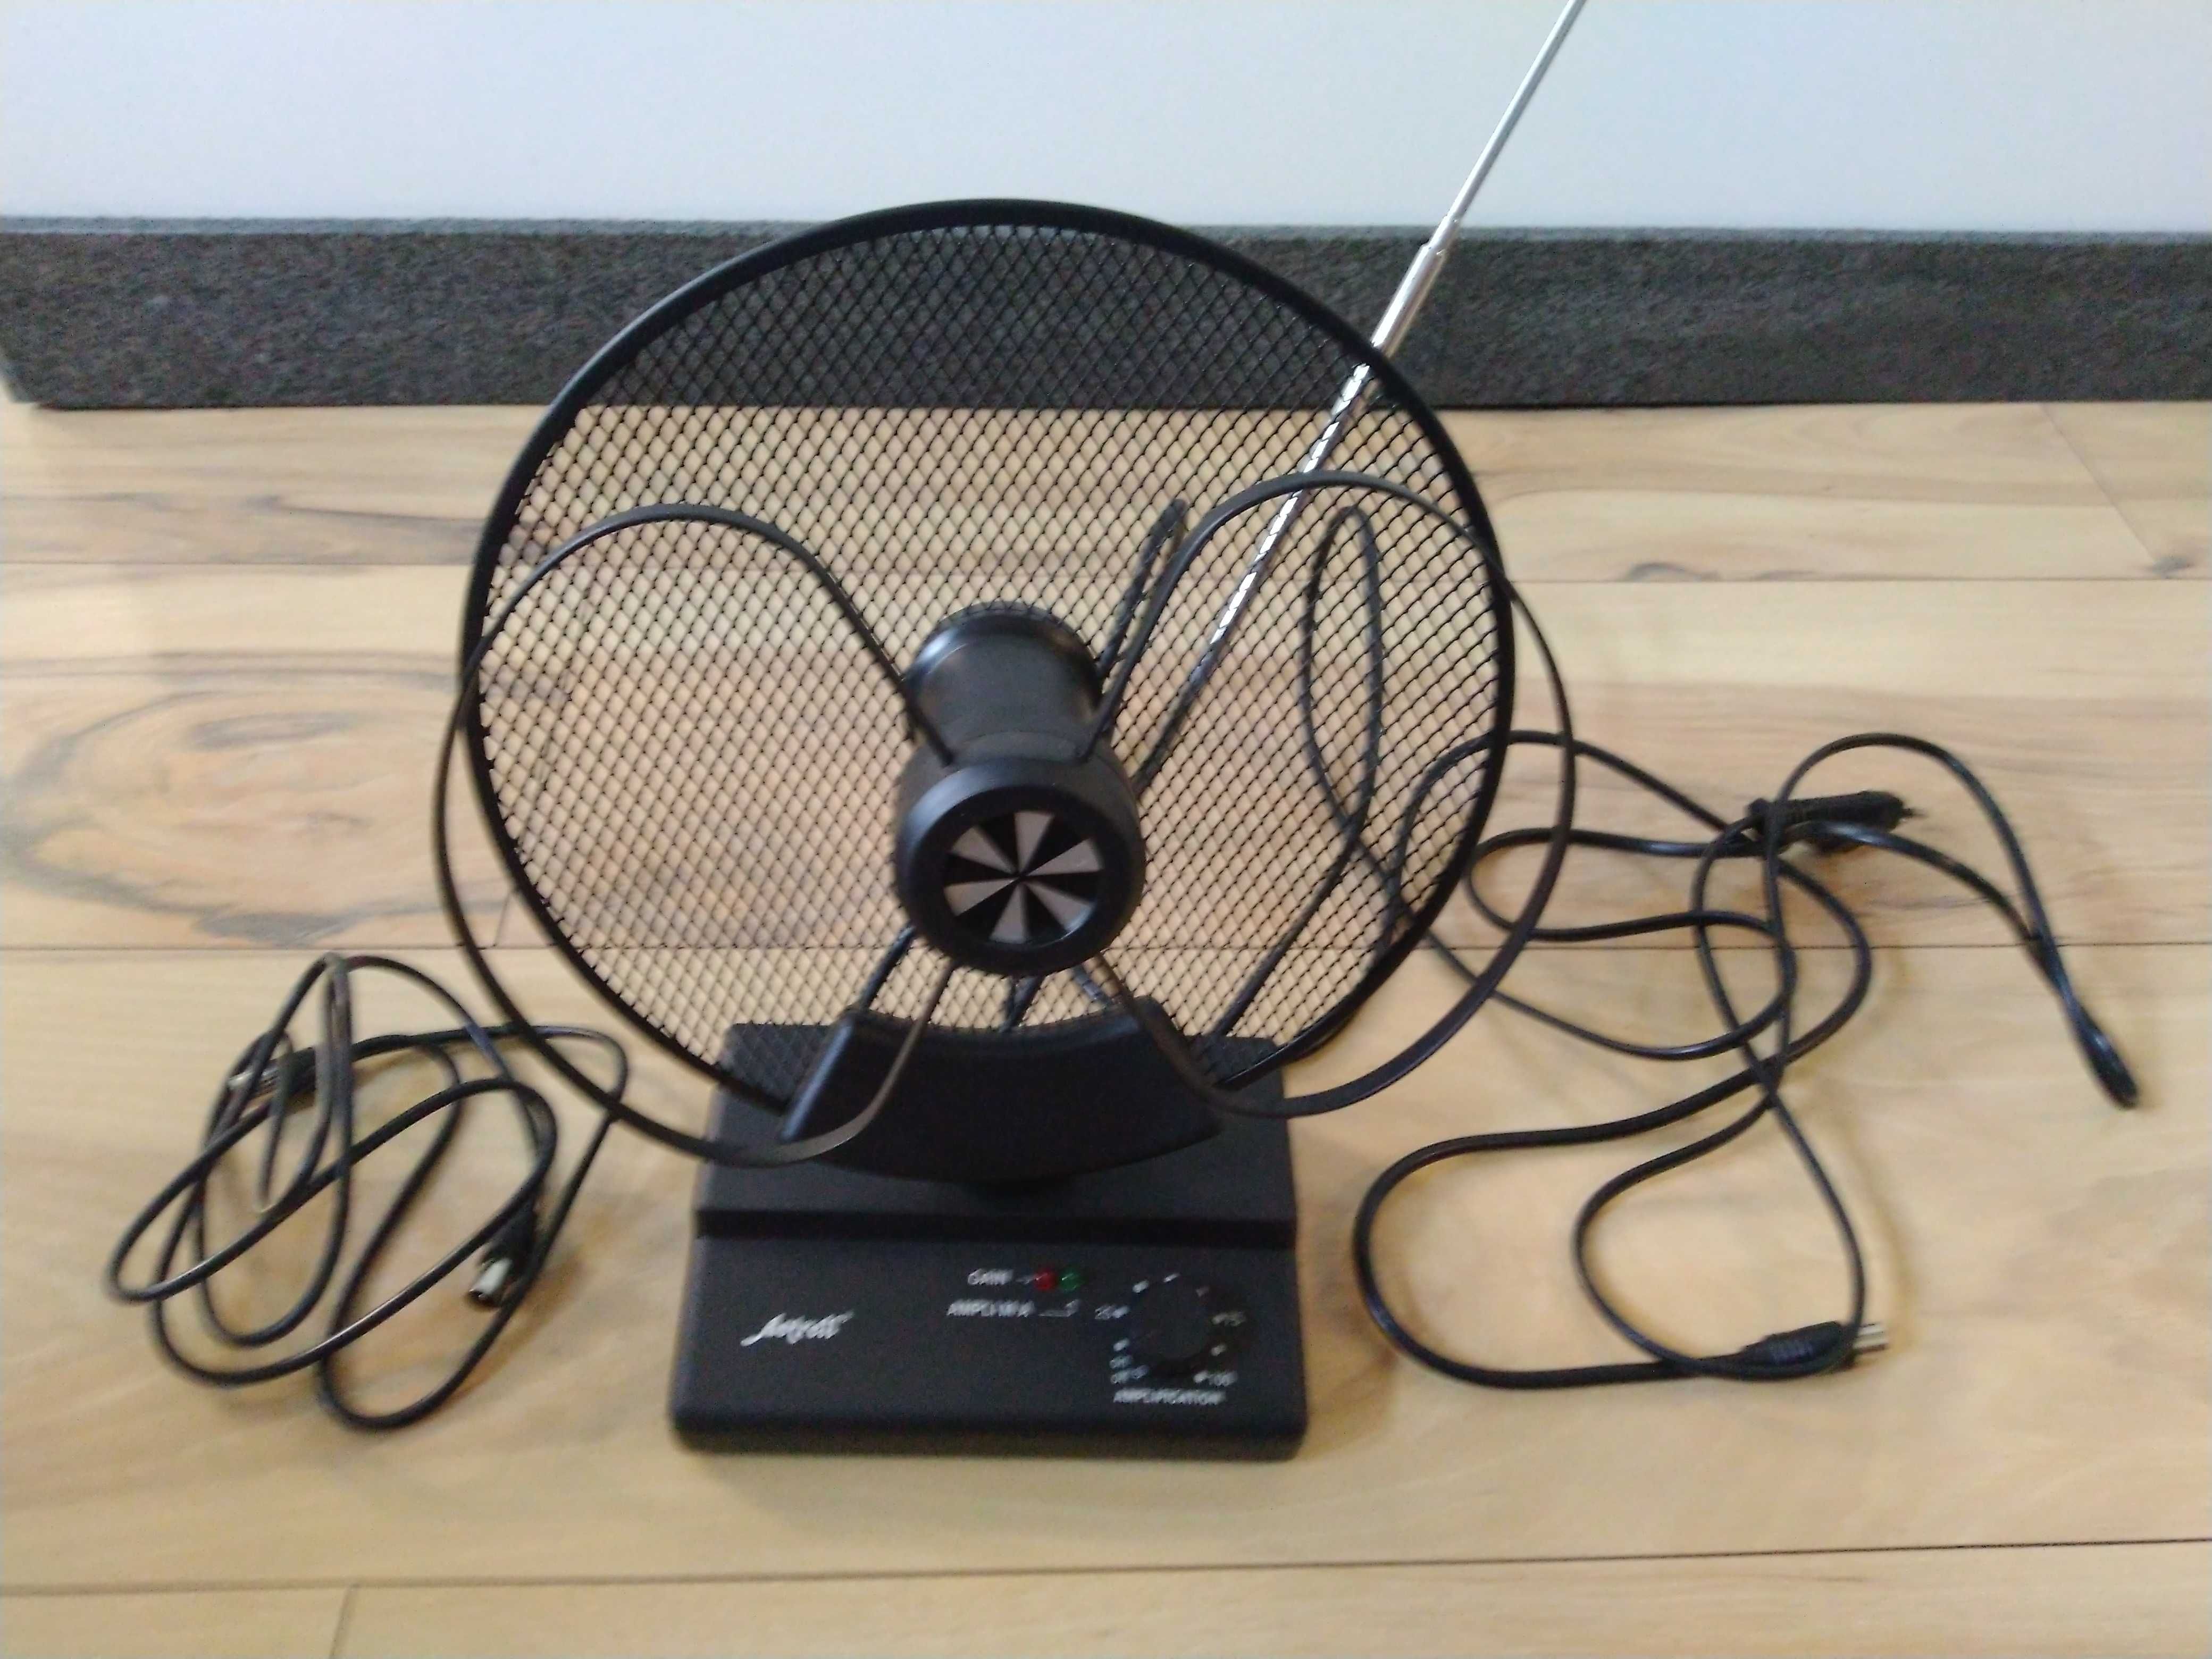 Antena Astrilla UHF-VHF-FM 32 dB